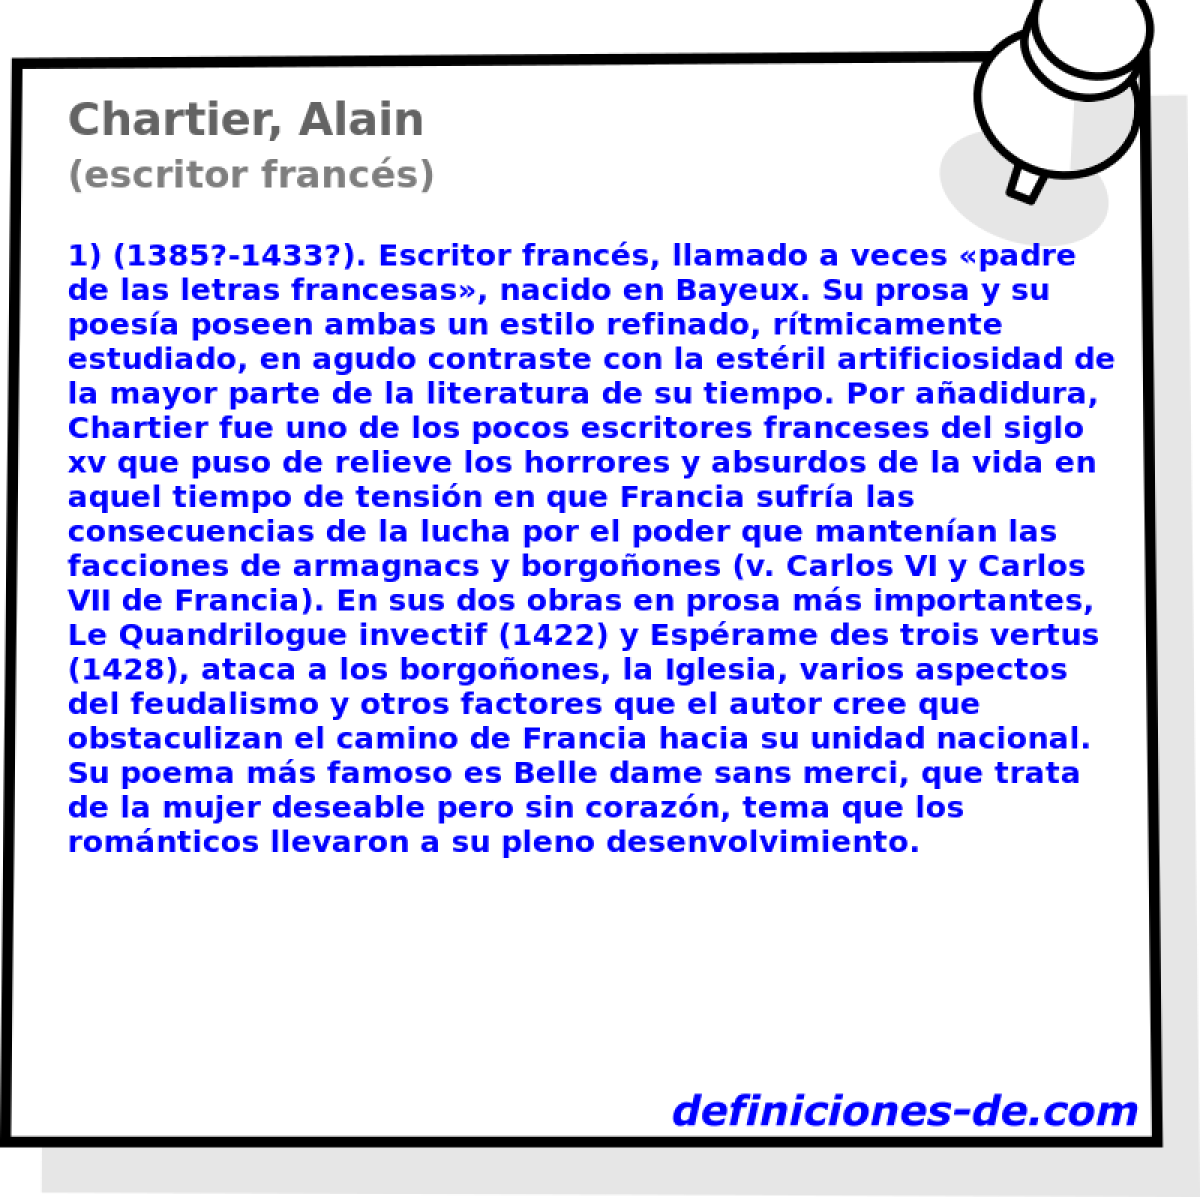 Chartier, Alain (escritor francs)